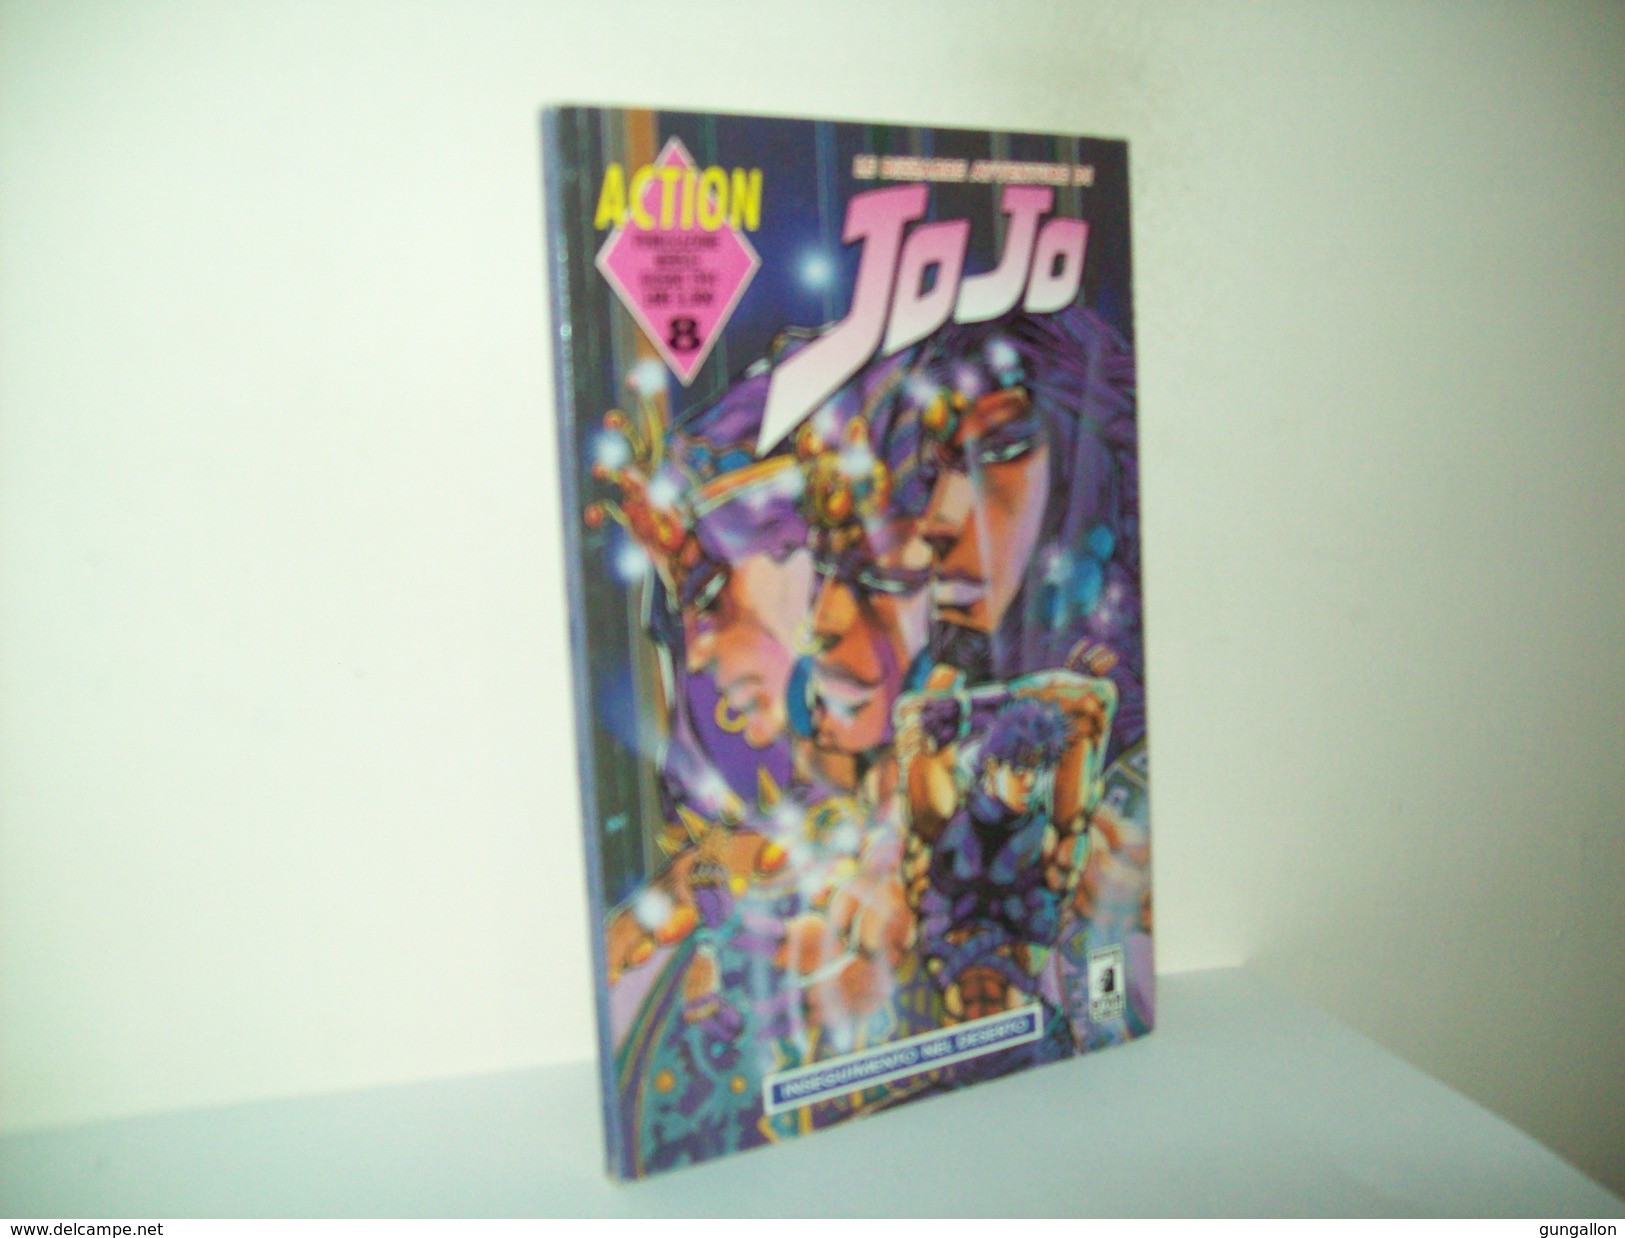 Jo Jo (Star Comics 1994) N. 8 - Manga